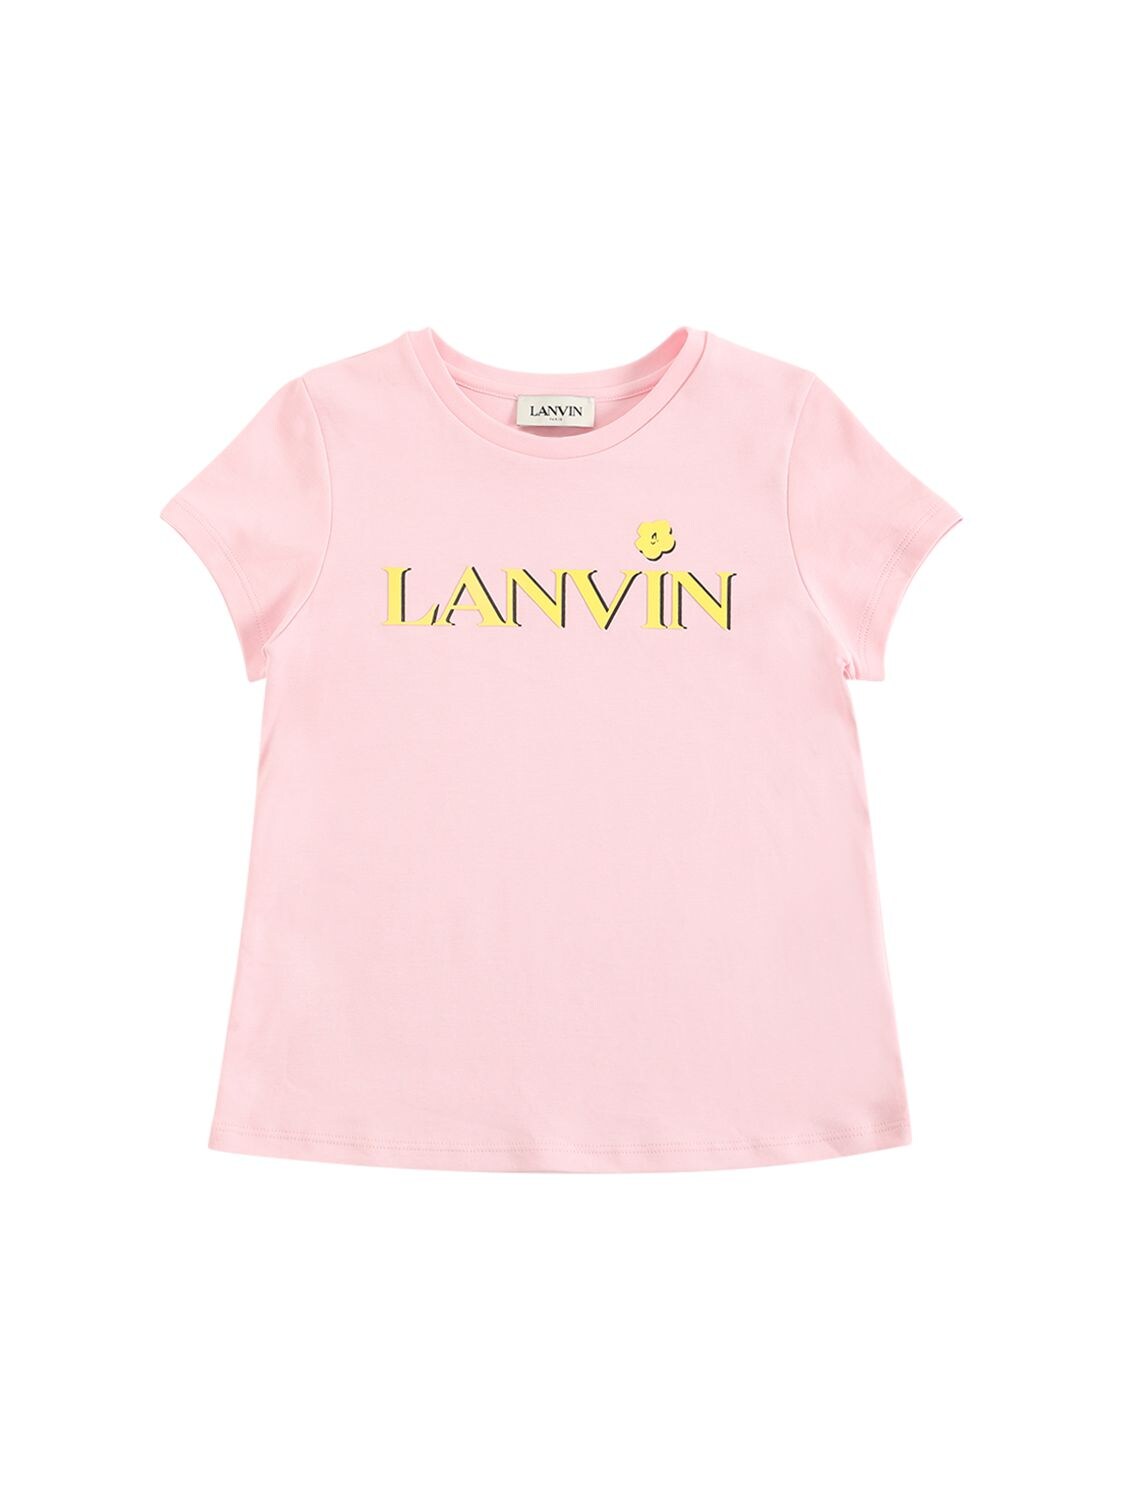 Lanvin Kids' Printed Logo Cotton Jersey T-shirt In Pink